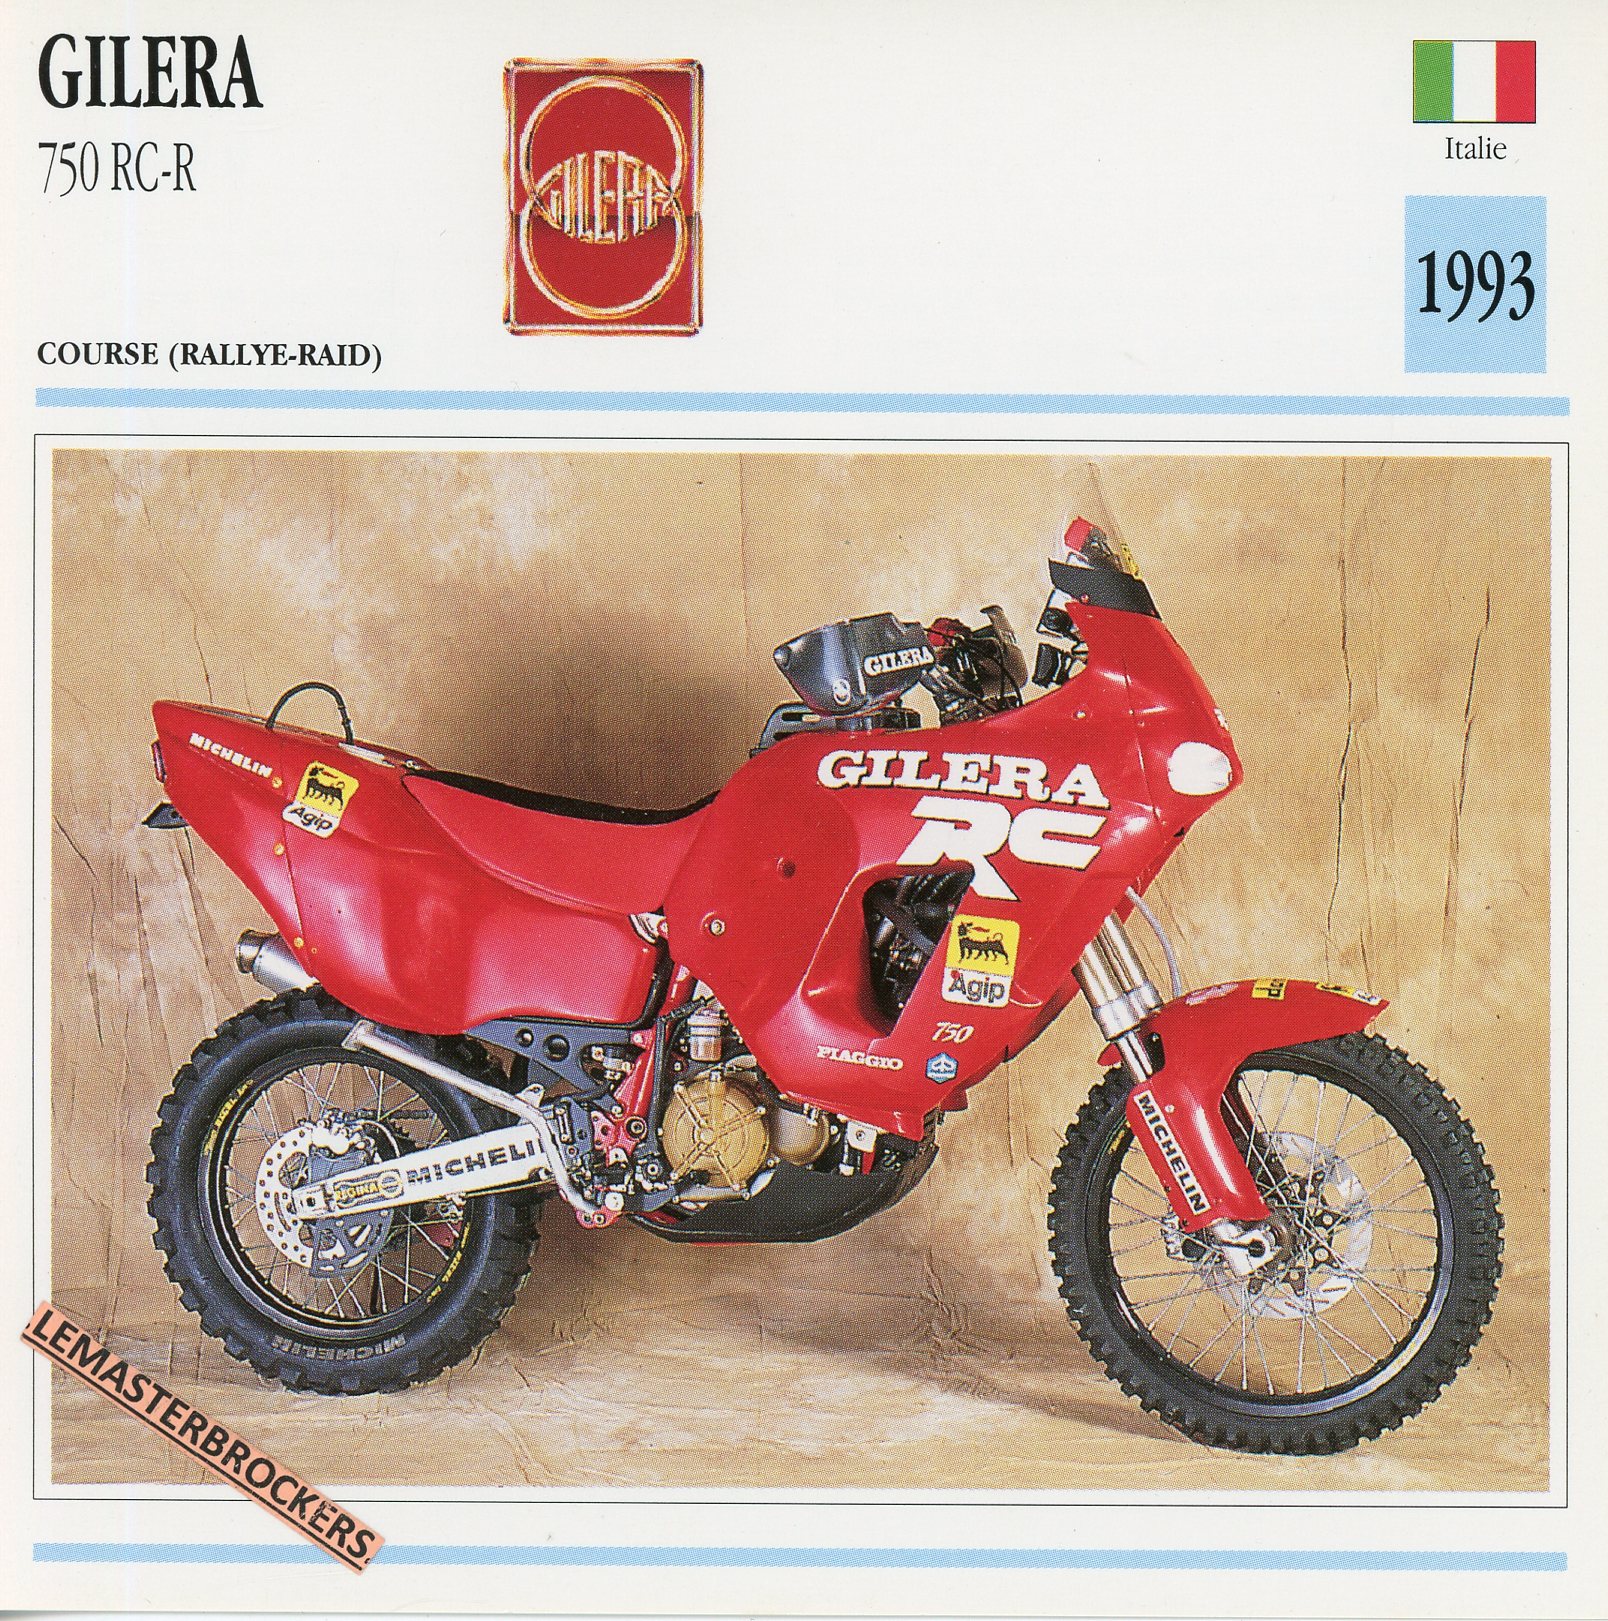 GILERA-750-RCR-1993-FICHE-MOTO-MOTORCYCLE-CARDS-ATLAS-LEMASTERBROCKERS